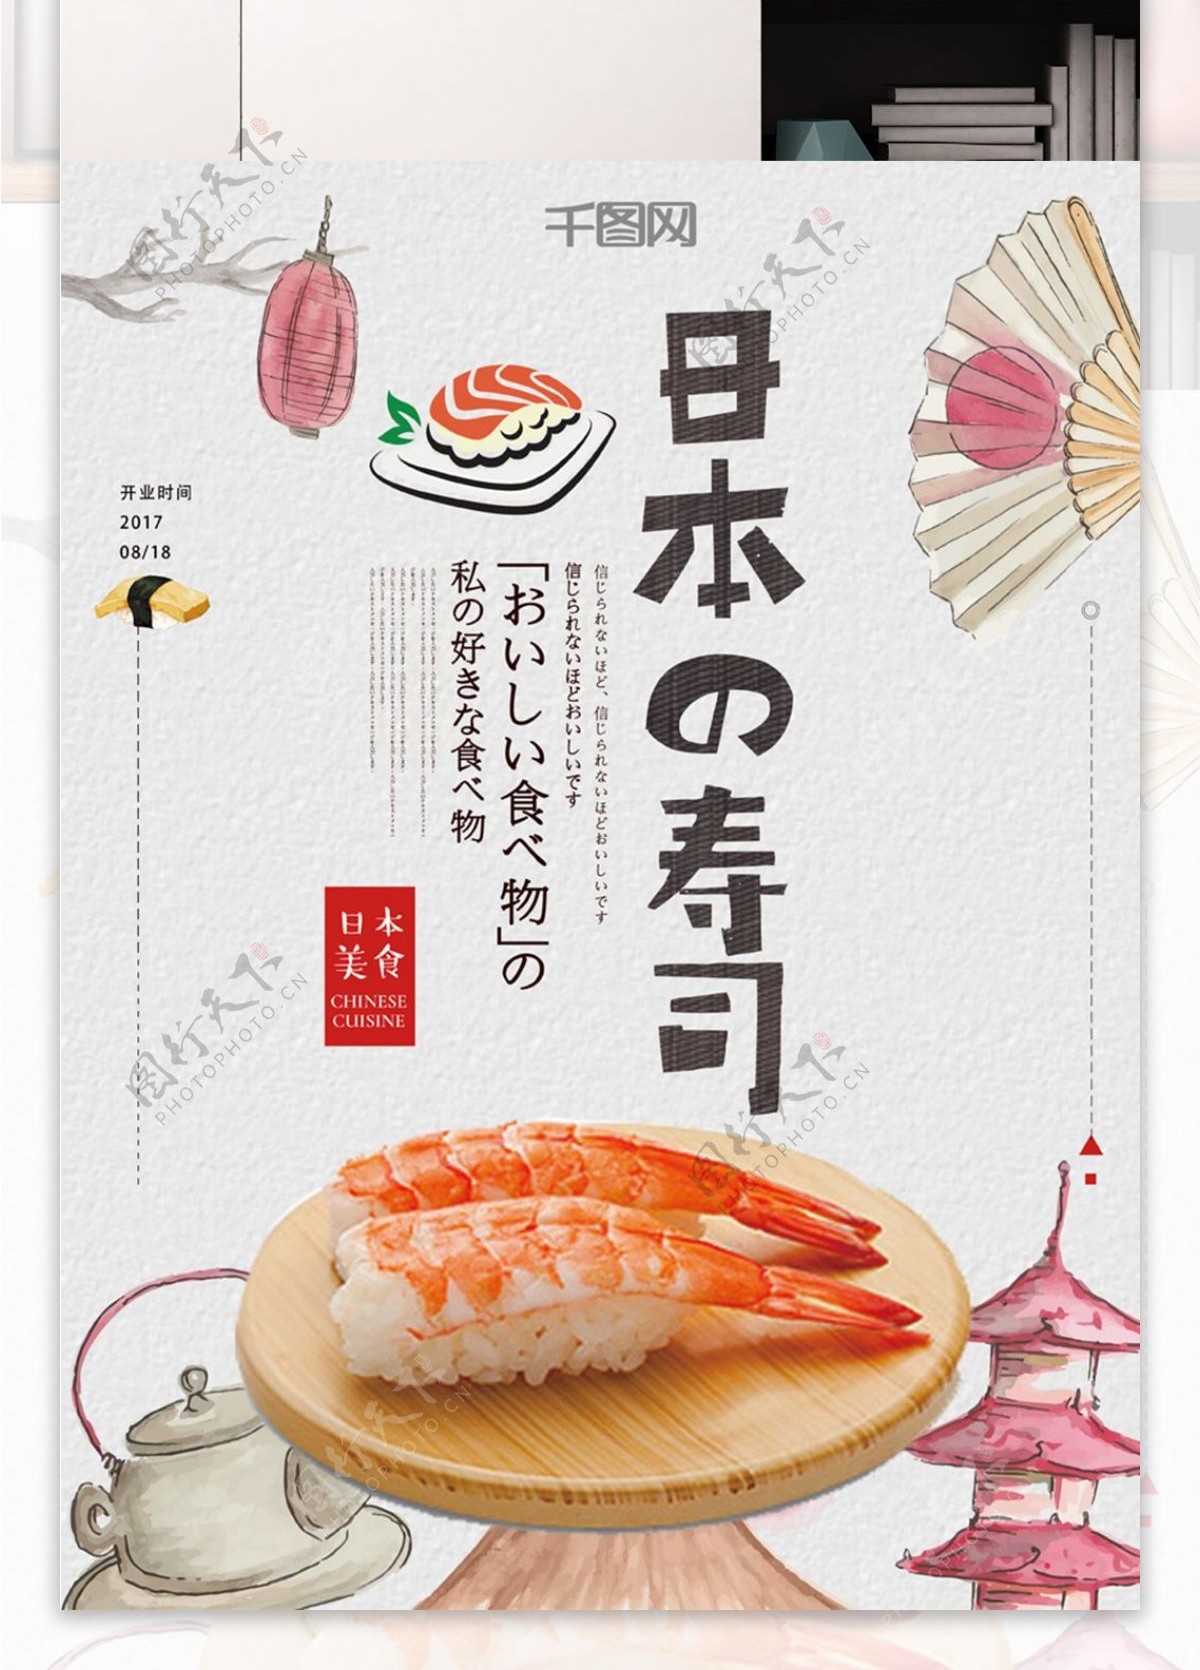 可爱日系日本寿司美食海报